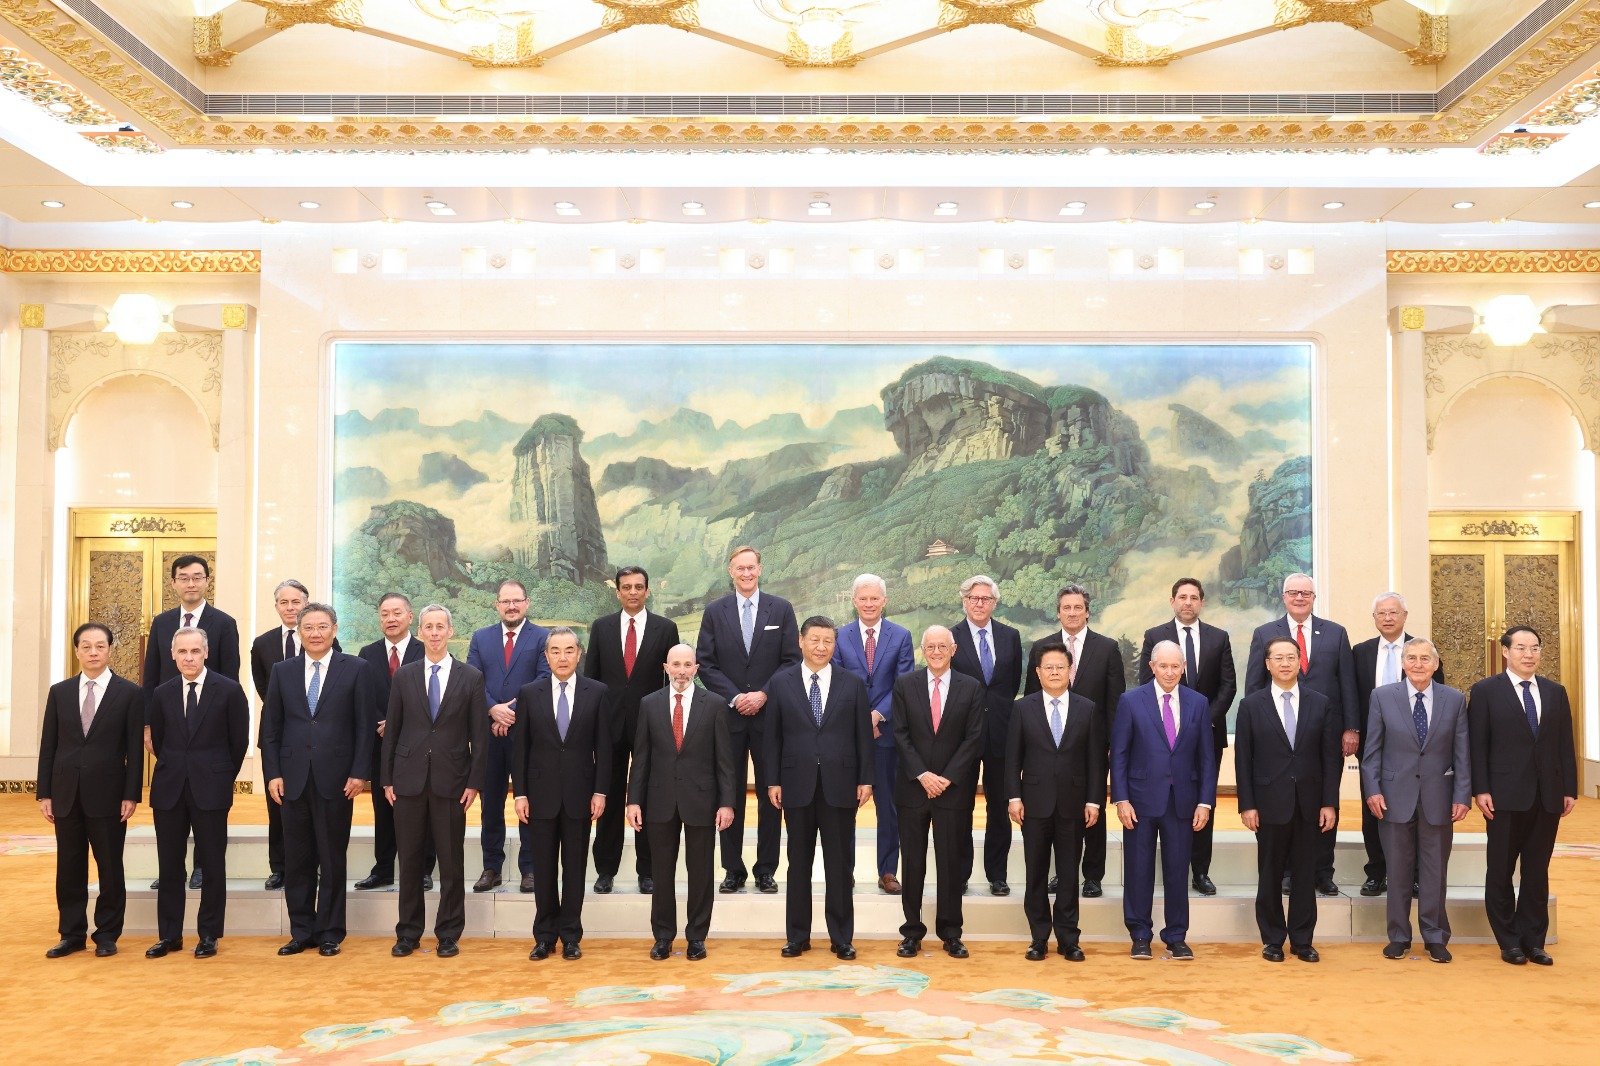 中国国家主席习近平周三上午在北京人民大会堂，会见美国工商界和战略学术界代表。会见开始前，习近平同他们合影留念。（图取自中新社）